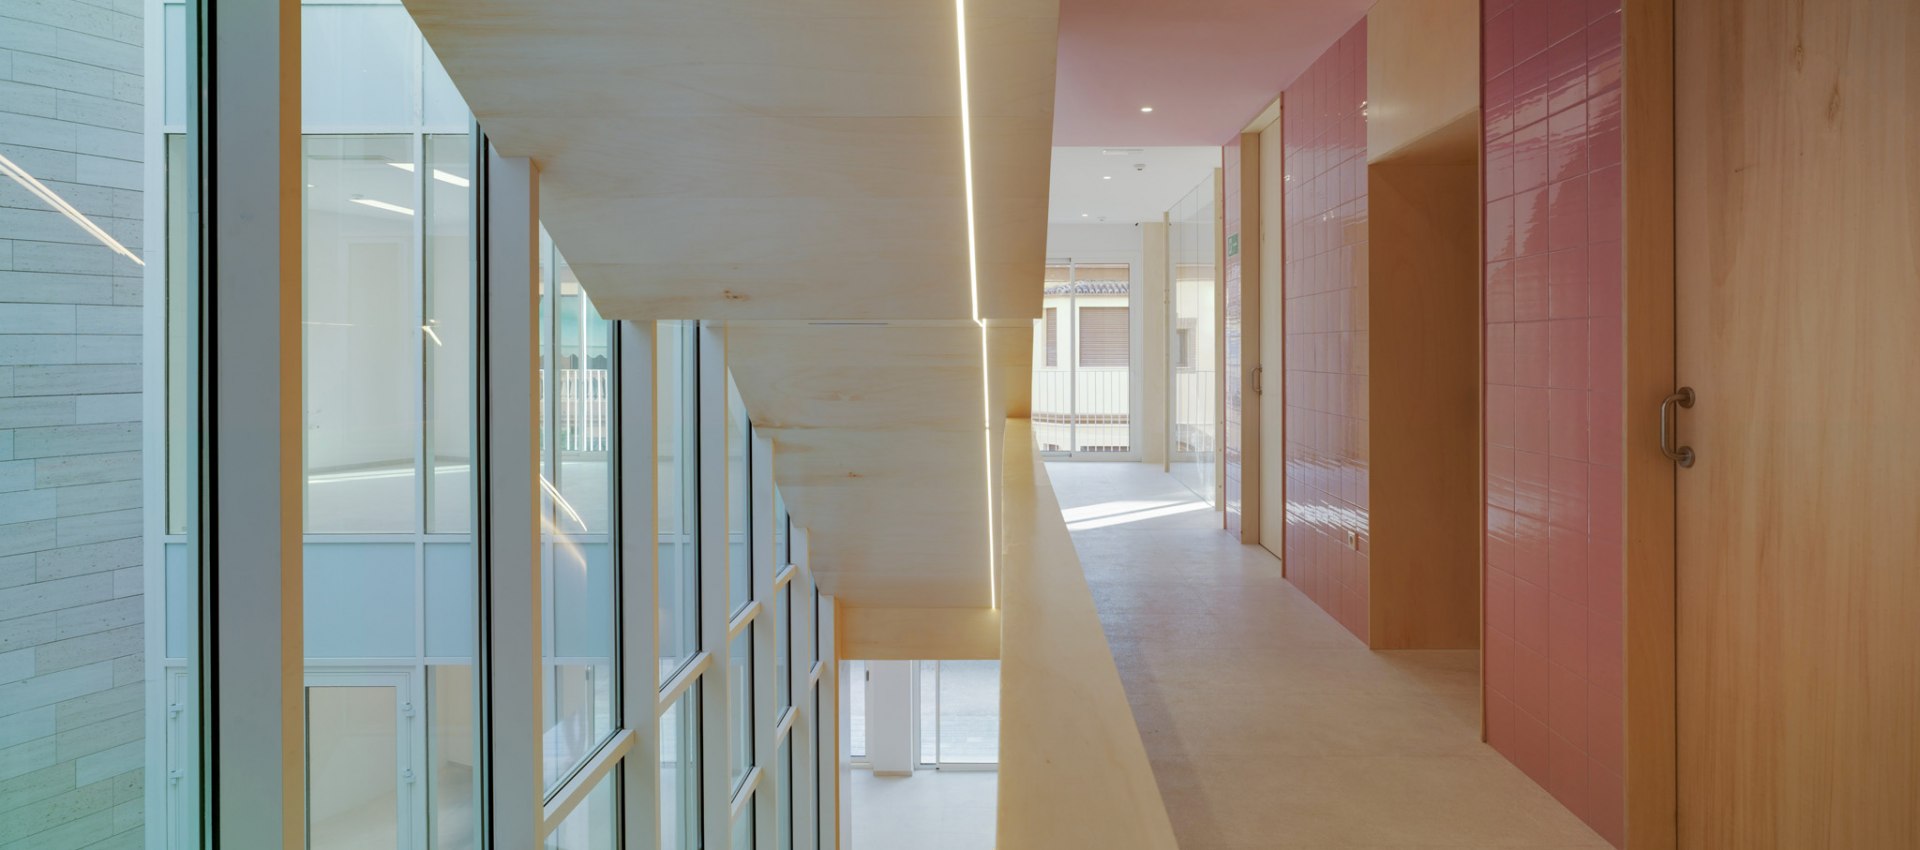 La belleza de un amable interior. Centro cultural de Favara por COR  Arquitectos, Sobre Arquitectura y más